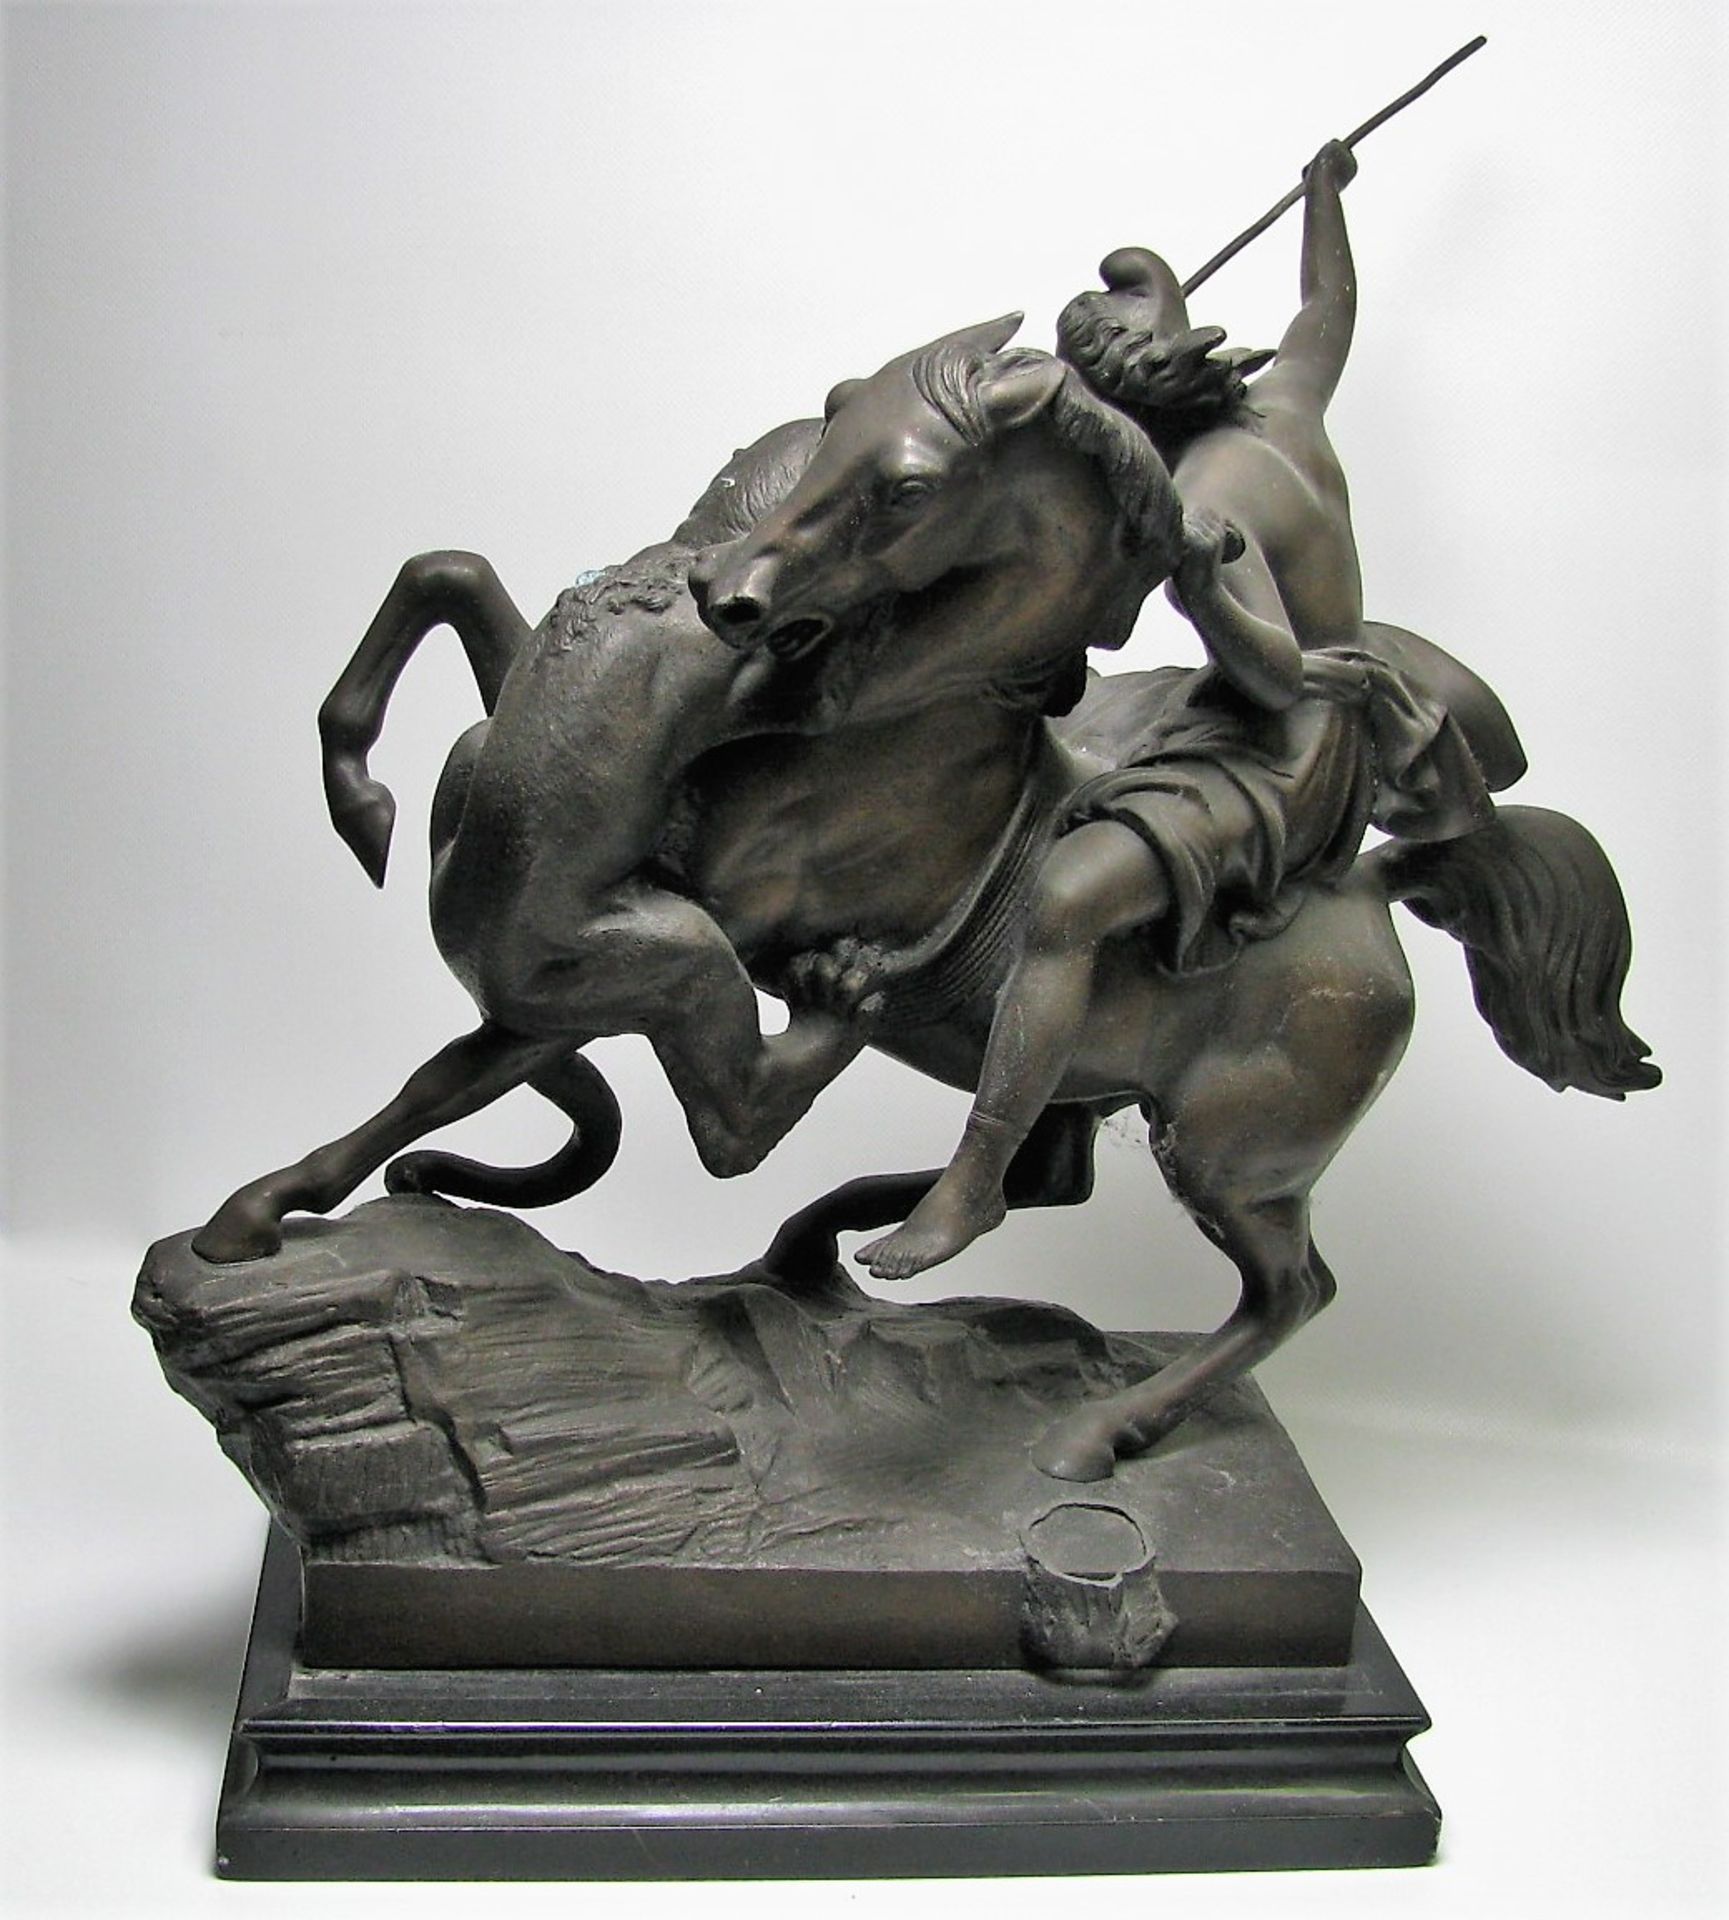 Reiter zu Pferd im Kampf mit dem Löwen, 19. Jahrhundert, Zinkguss, Besch. am Fuß, 50 x 45 x 28 cm. - Bild 2 aus 2